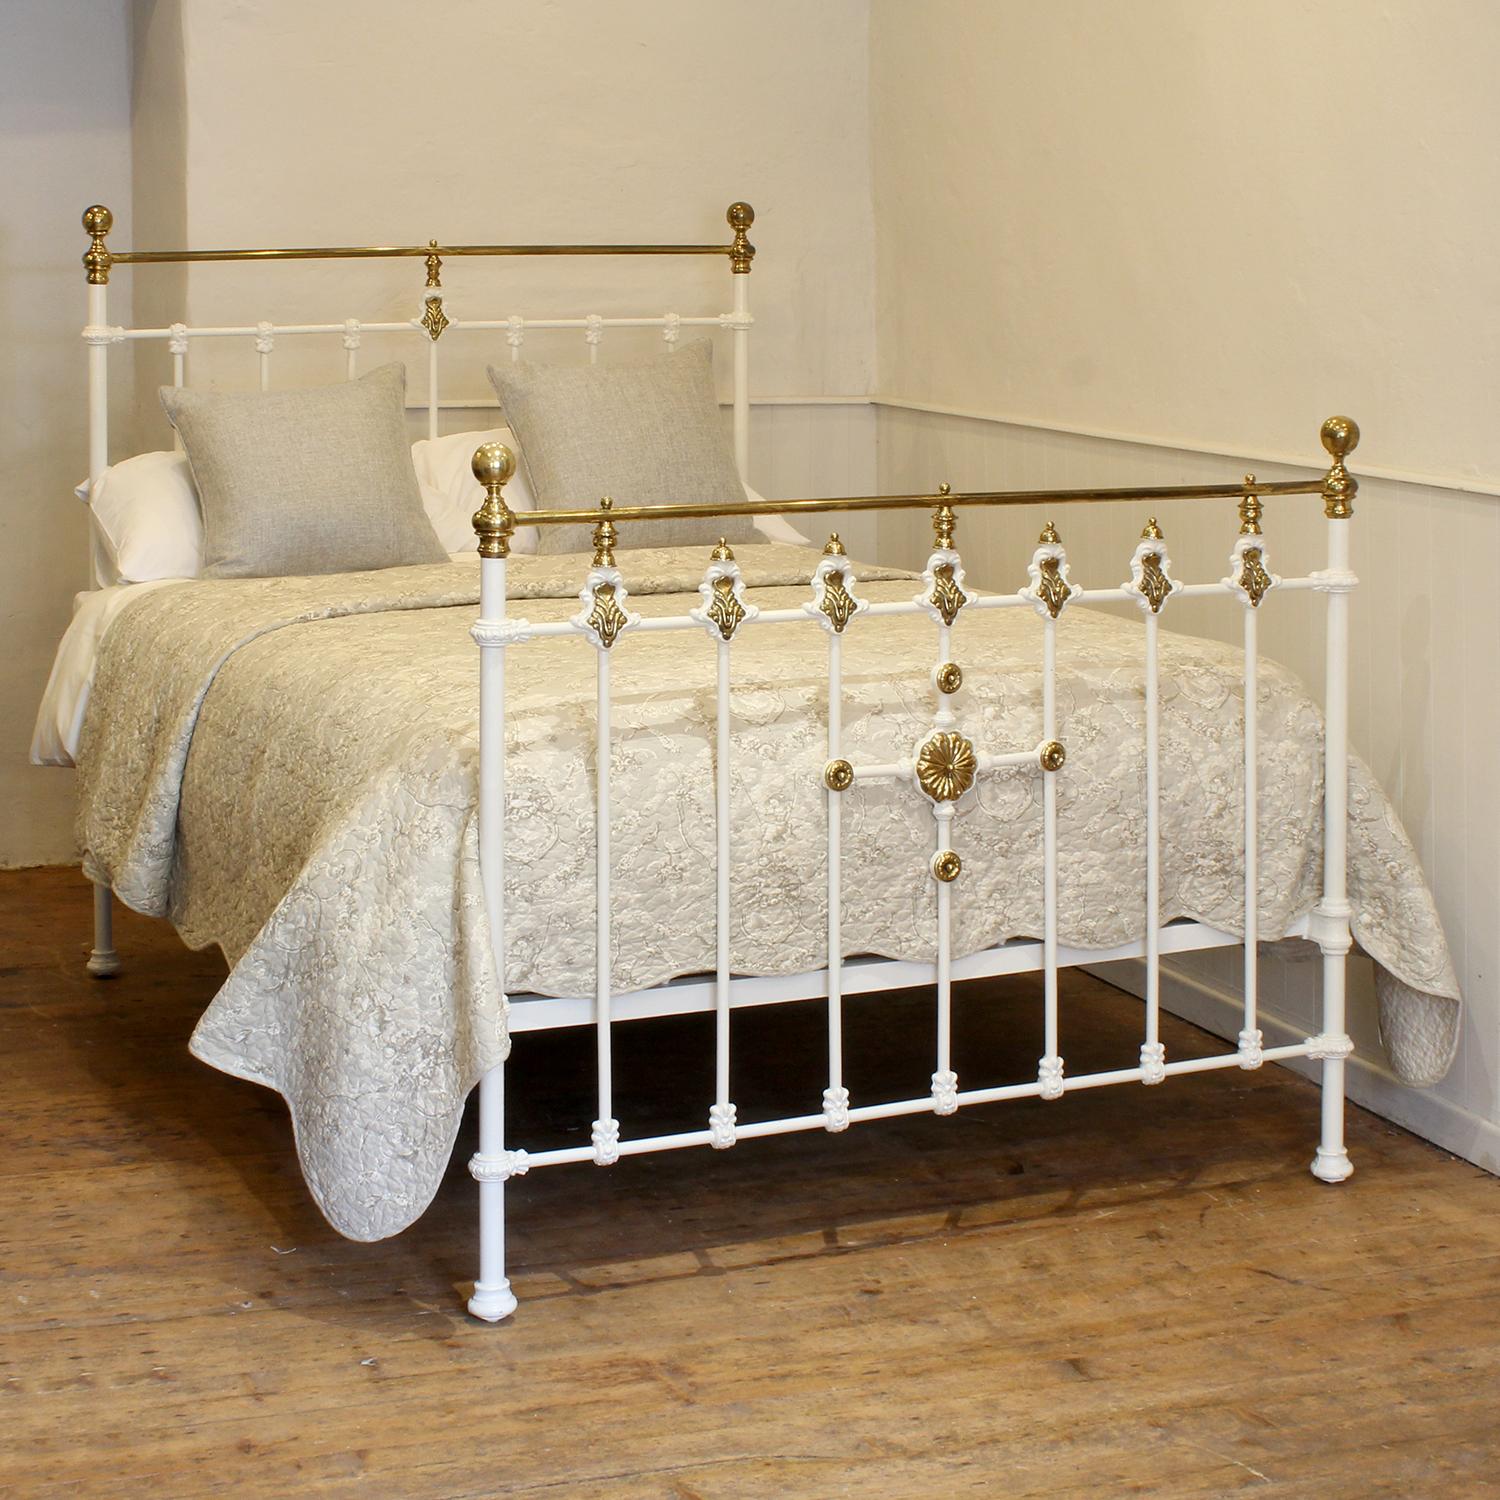 Ein attraktives viktorianisches Bettgestell aus Messing und Gusseisen, weiß lackiert und mit einer Messingrosette verziert.

Dieses Bett ist für ein Doppelbett mit einer Breite von 54 Zoll (135 cm) und einer Matratze geeignet. 

Im Preis inbegriffen